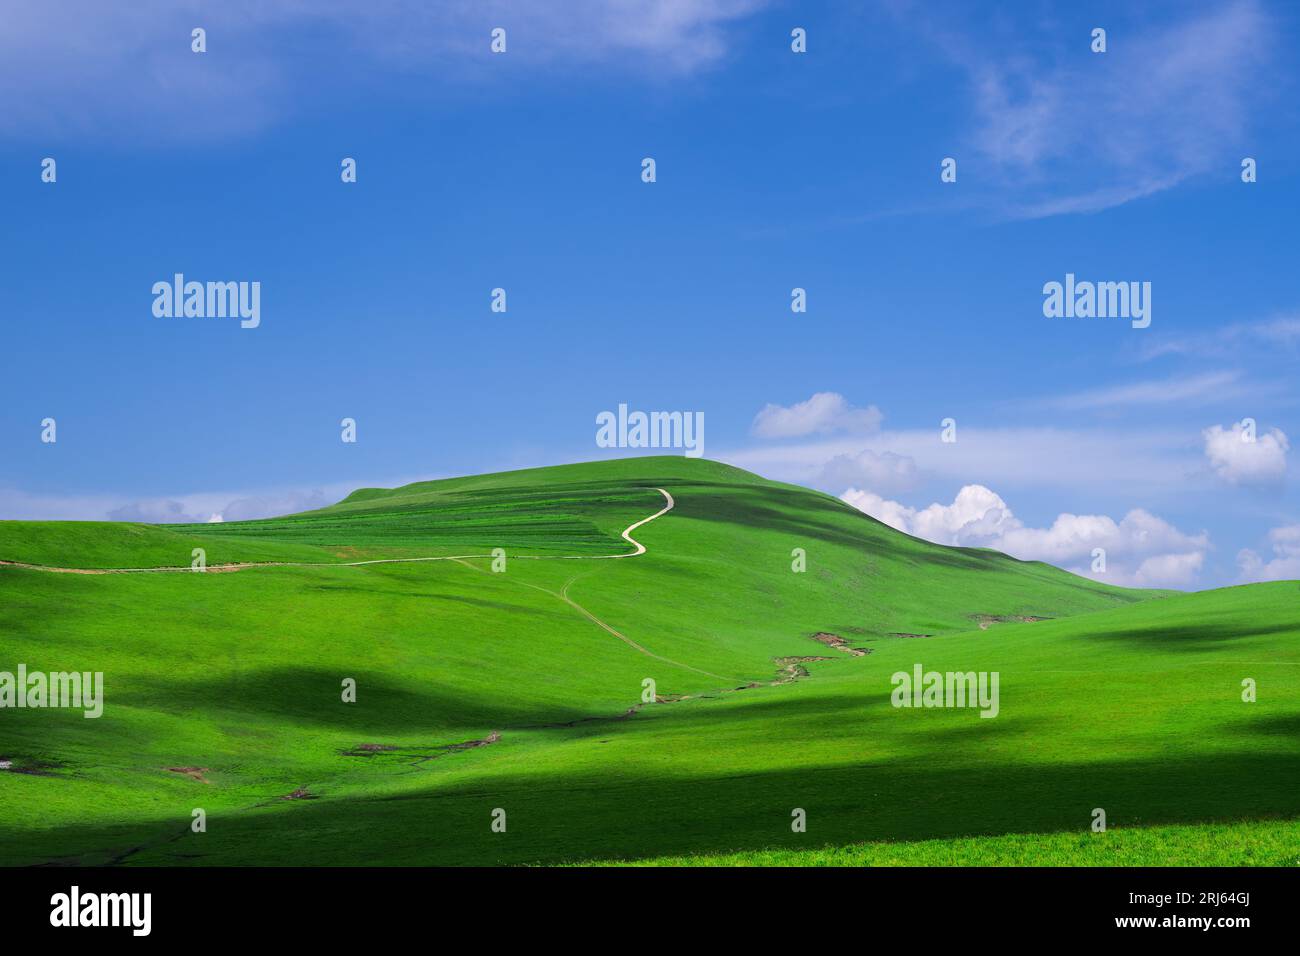 Une vue panoramique sur une colline en pente avec de l'herbe verte vibrante, entourée d'un ciel bleu clair Banque D'Images